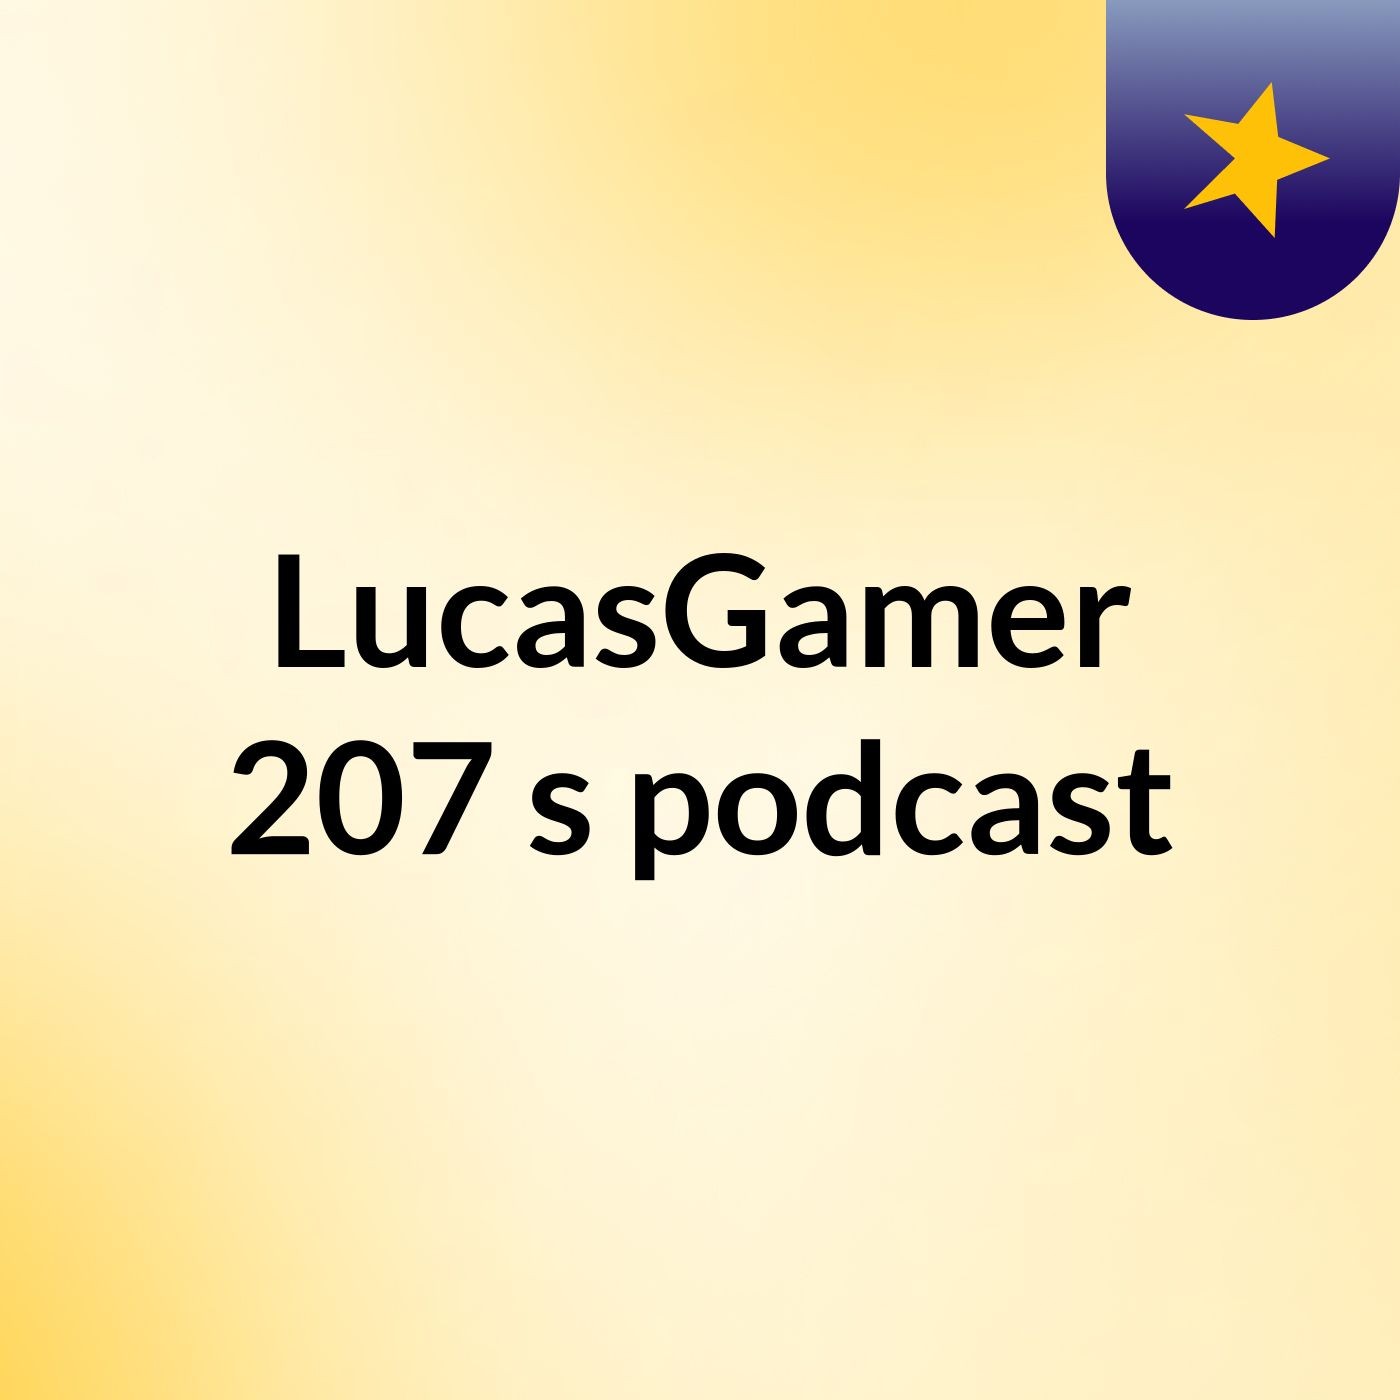 LucasGamer 207's podcast